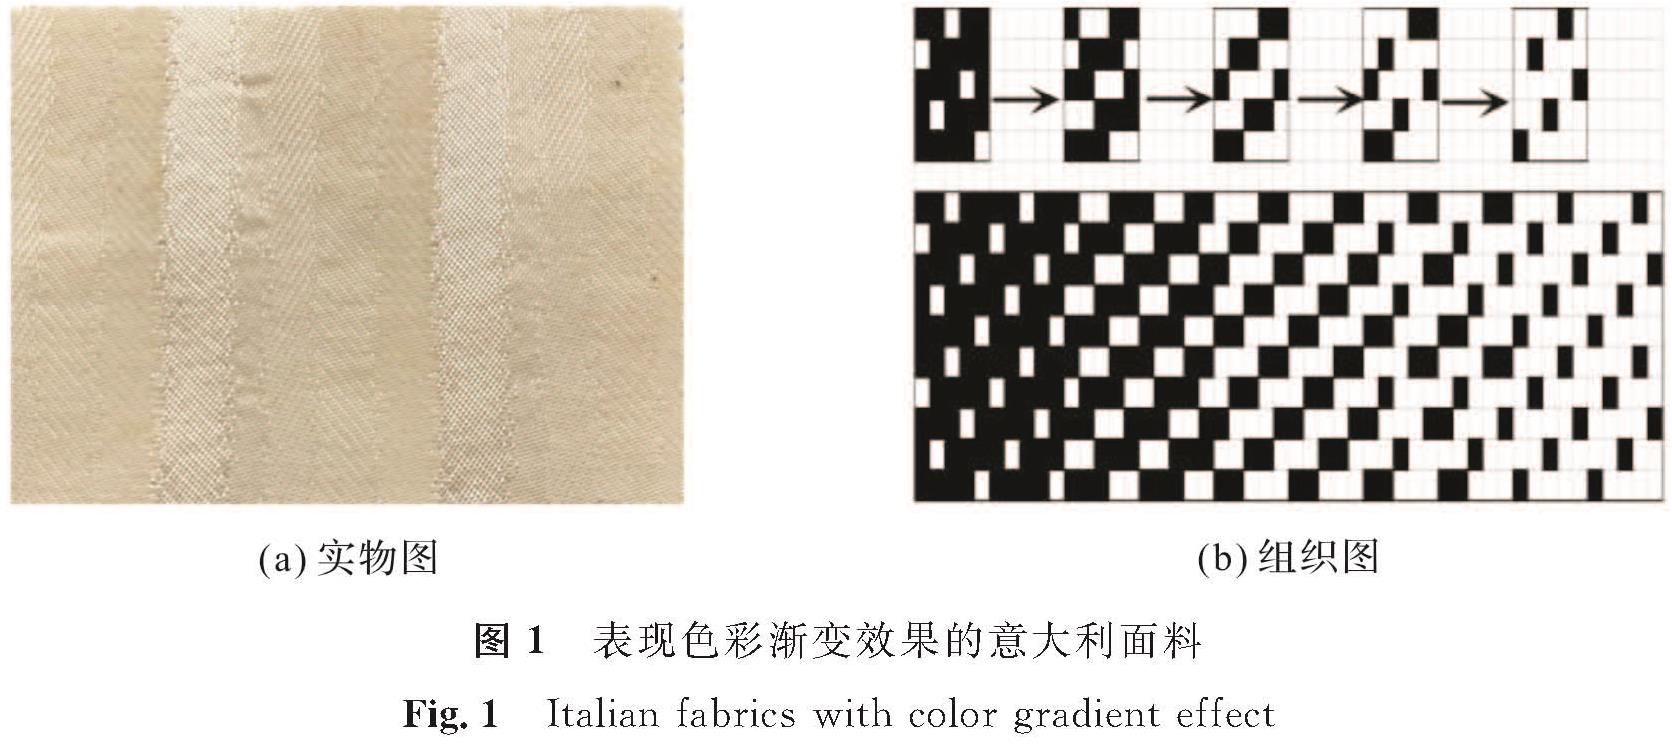 图1 表现色彩渐变效果的意大利面料<br/>Fig.1 Italian fabrics with color gradient effect